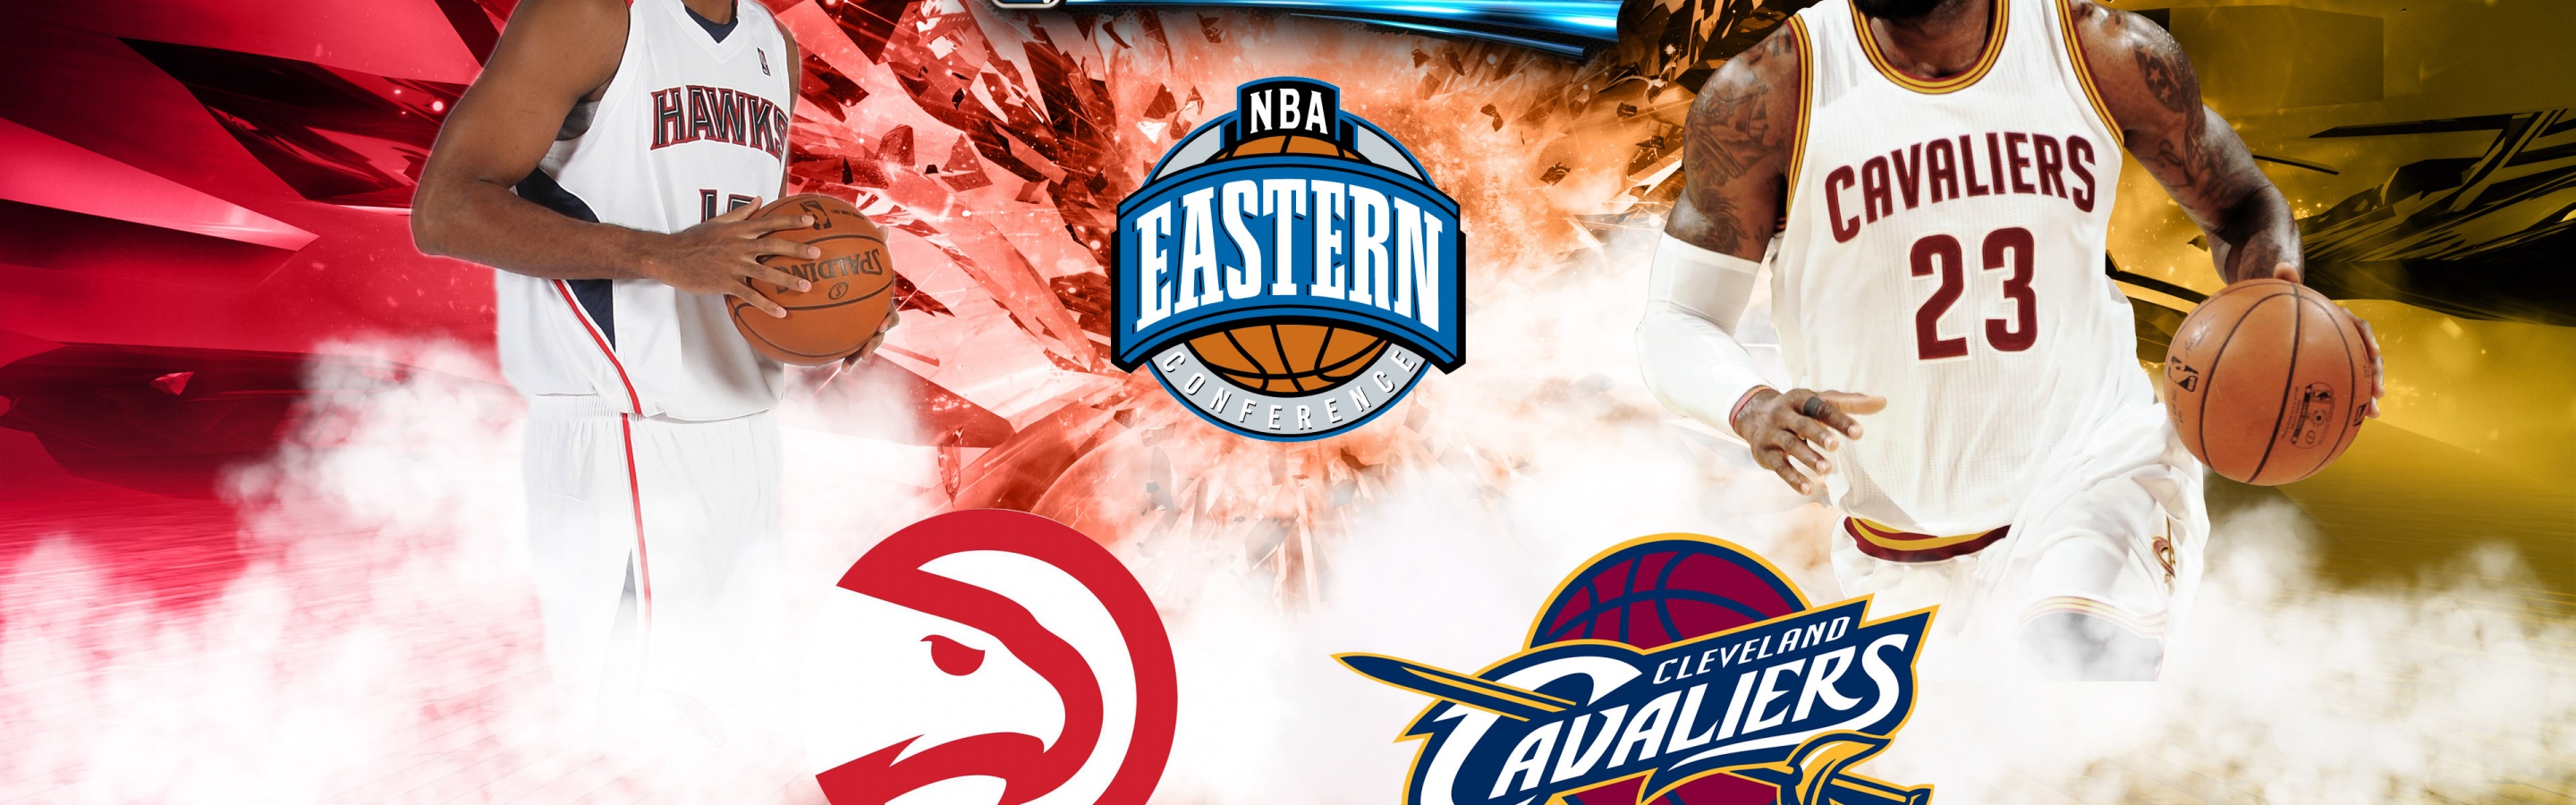 Hawks Vs Cavaliers Eastern Finals